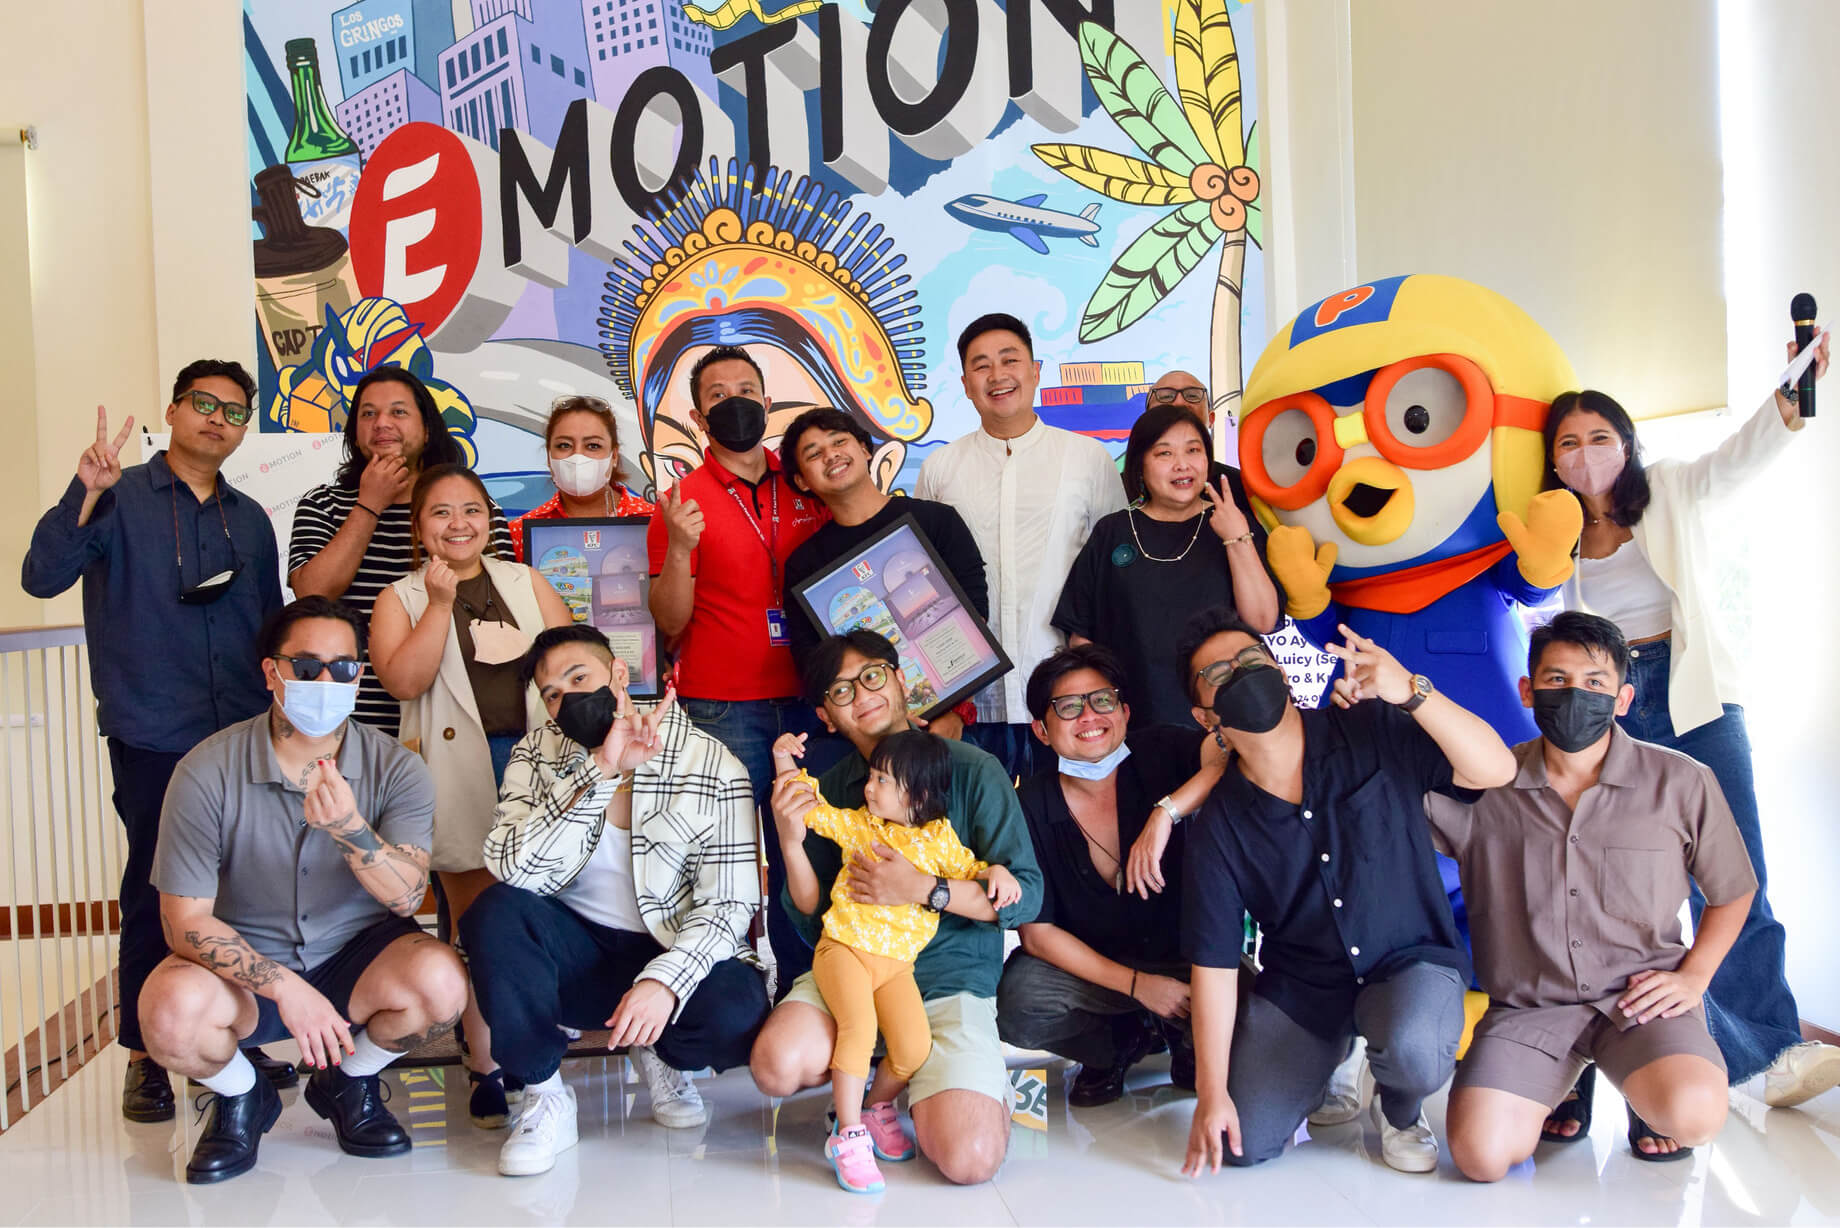 E-Motion Entertainment kini hadir untuk Bali • E-Motion